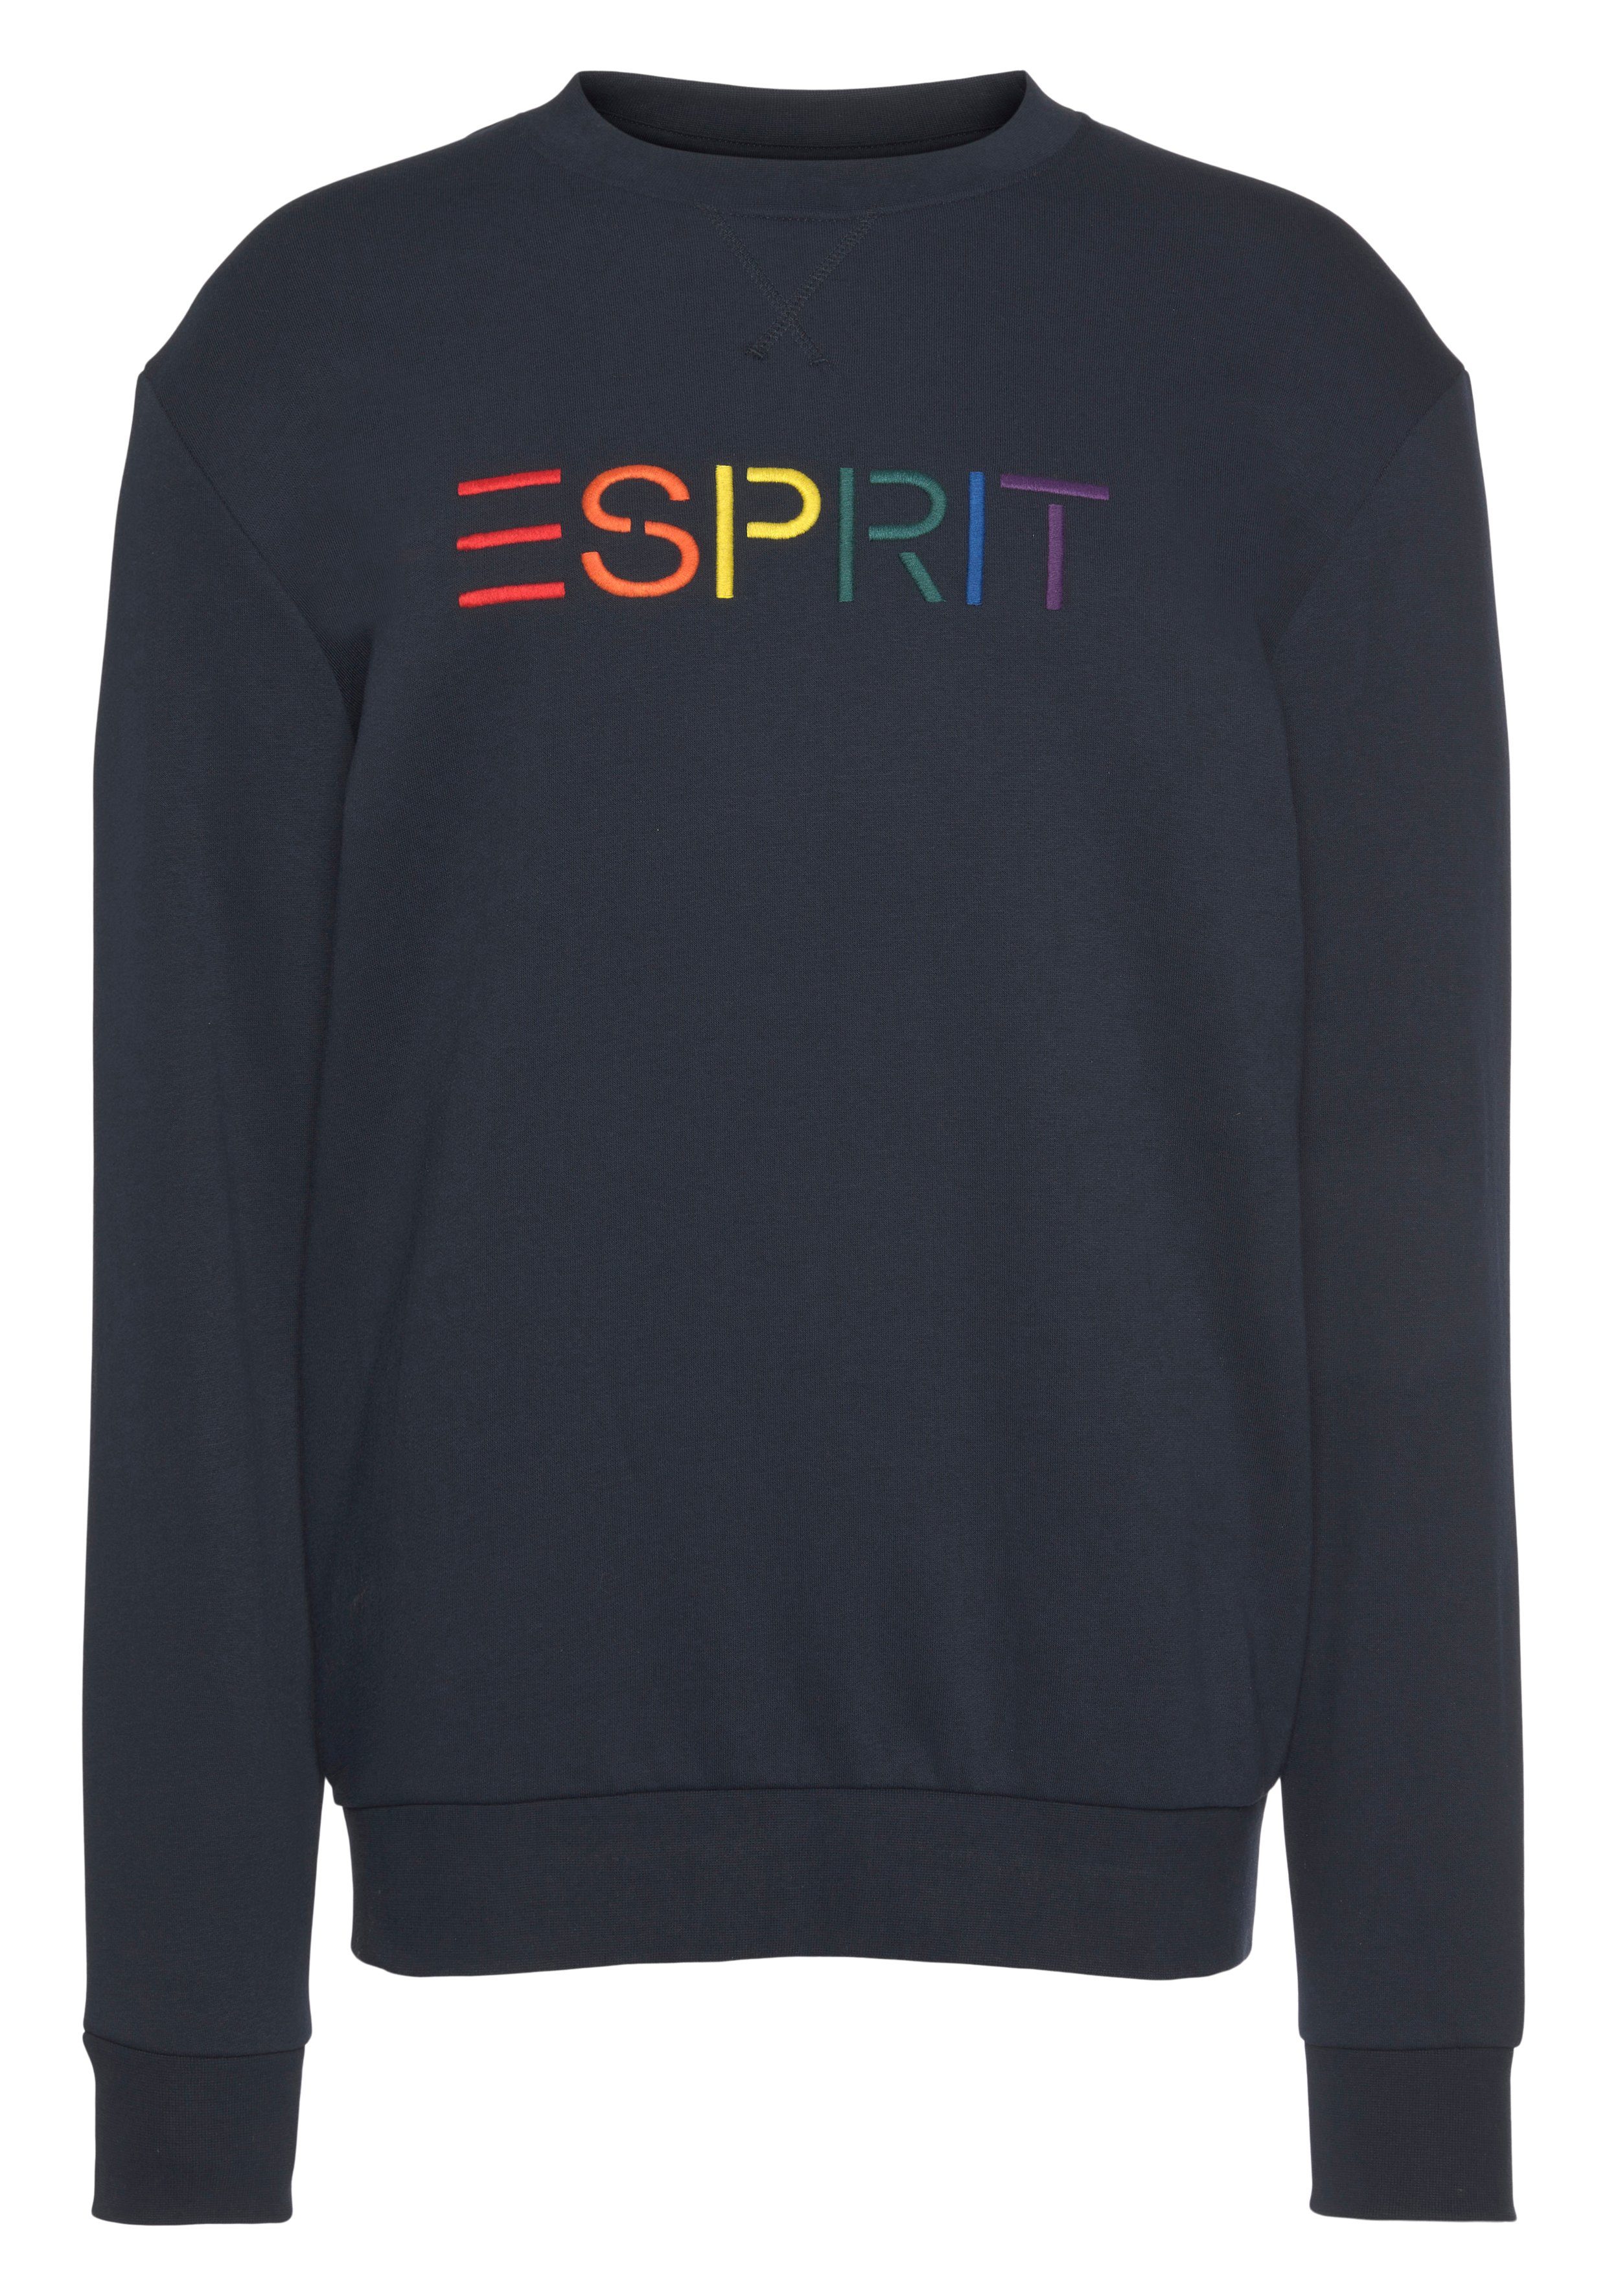 Logoschriftzug Esprit blau Sweatshirt mit